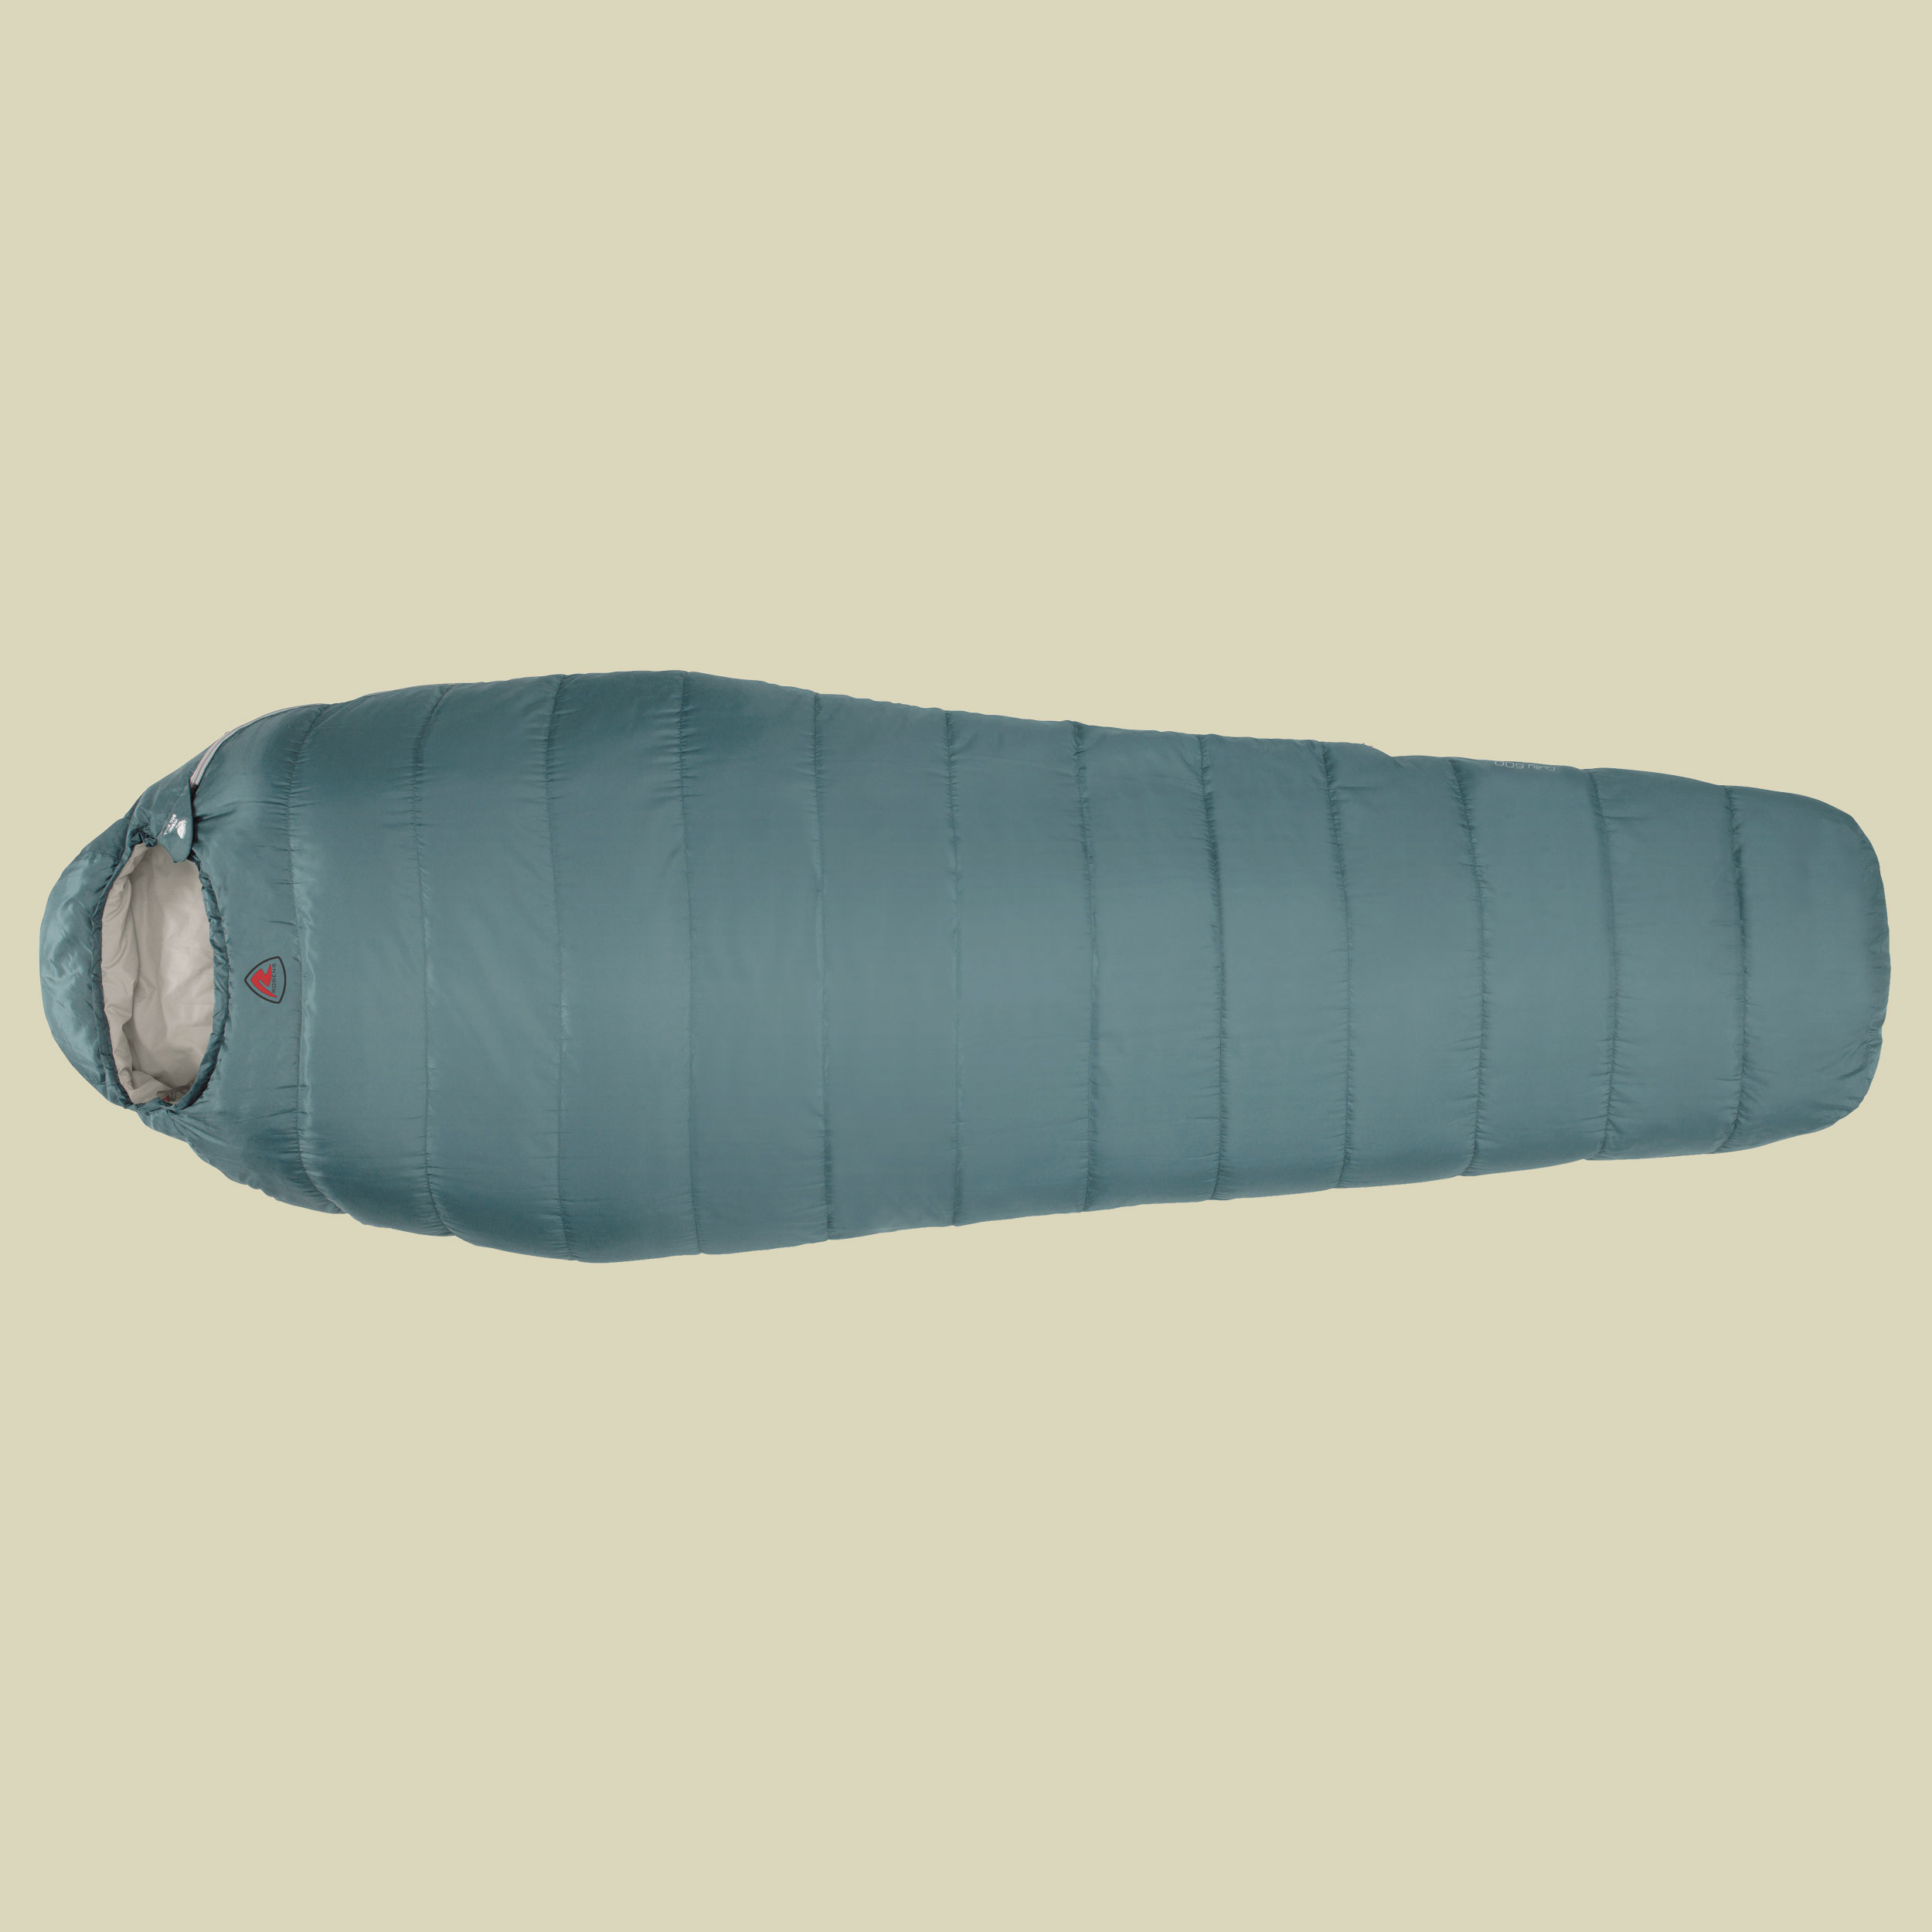 Gully 600 "R" bis Körpergröße: 195 cm Farbe: ocean blue; Reißverschluss rechts